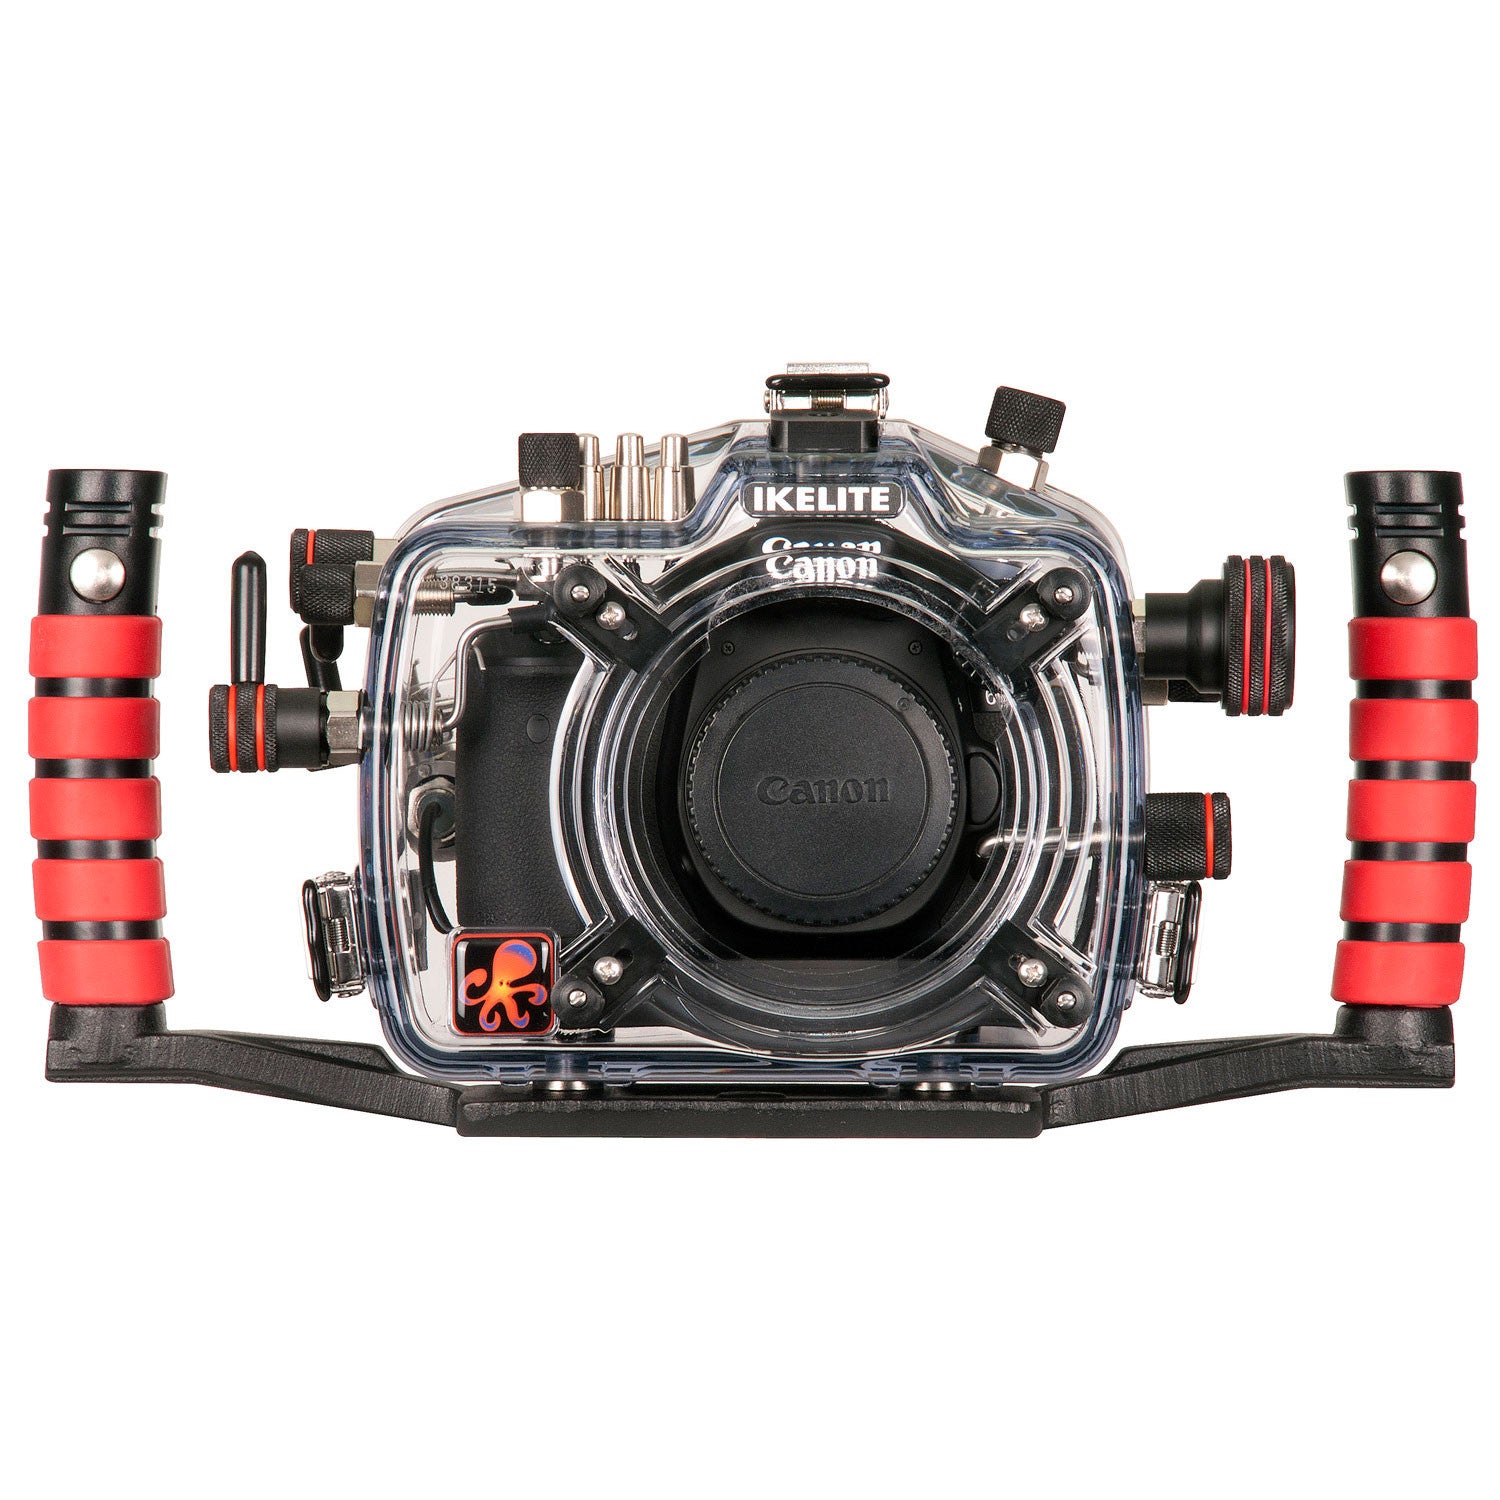 200FL Underwater TTL Housing for Canon EOS 60D DSLR Camera